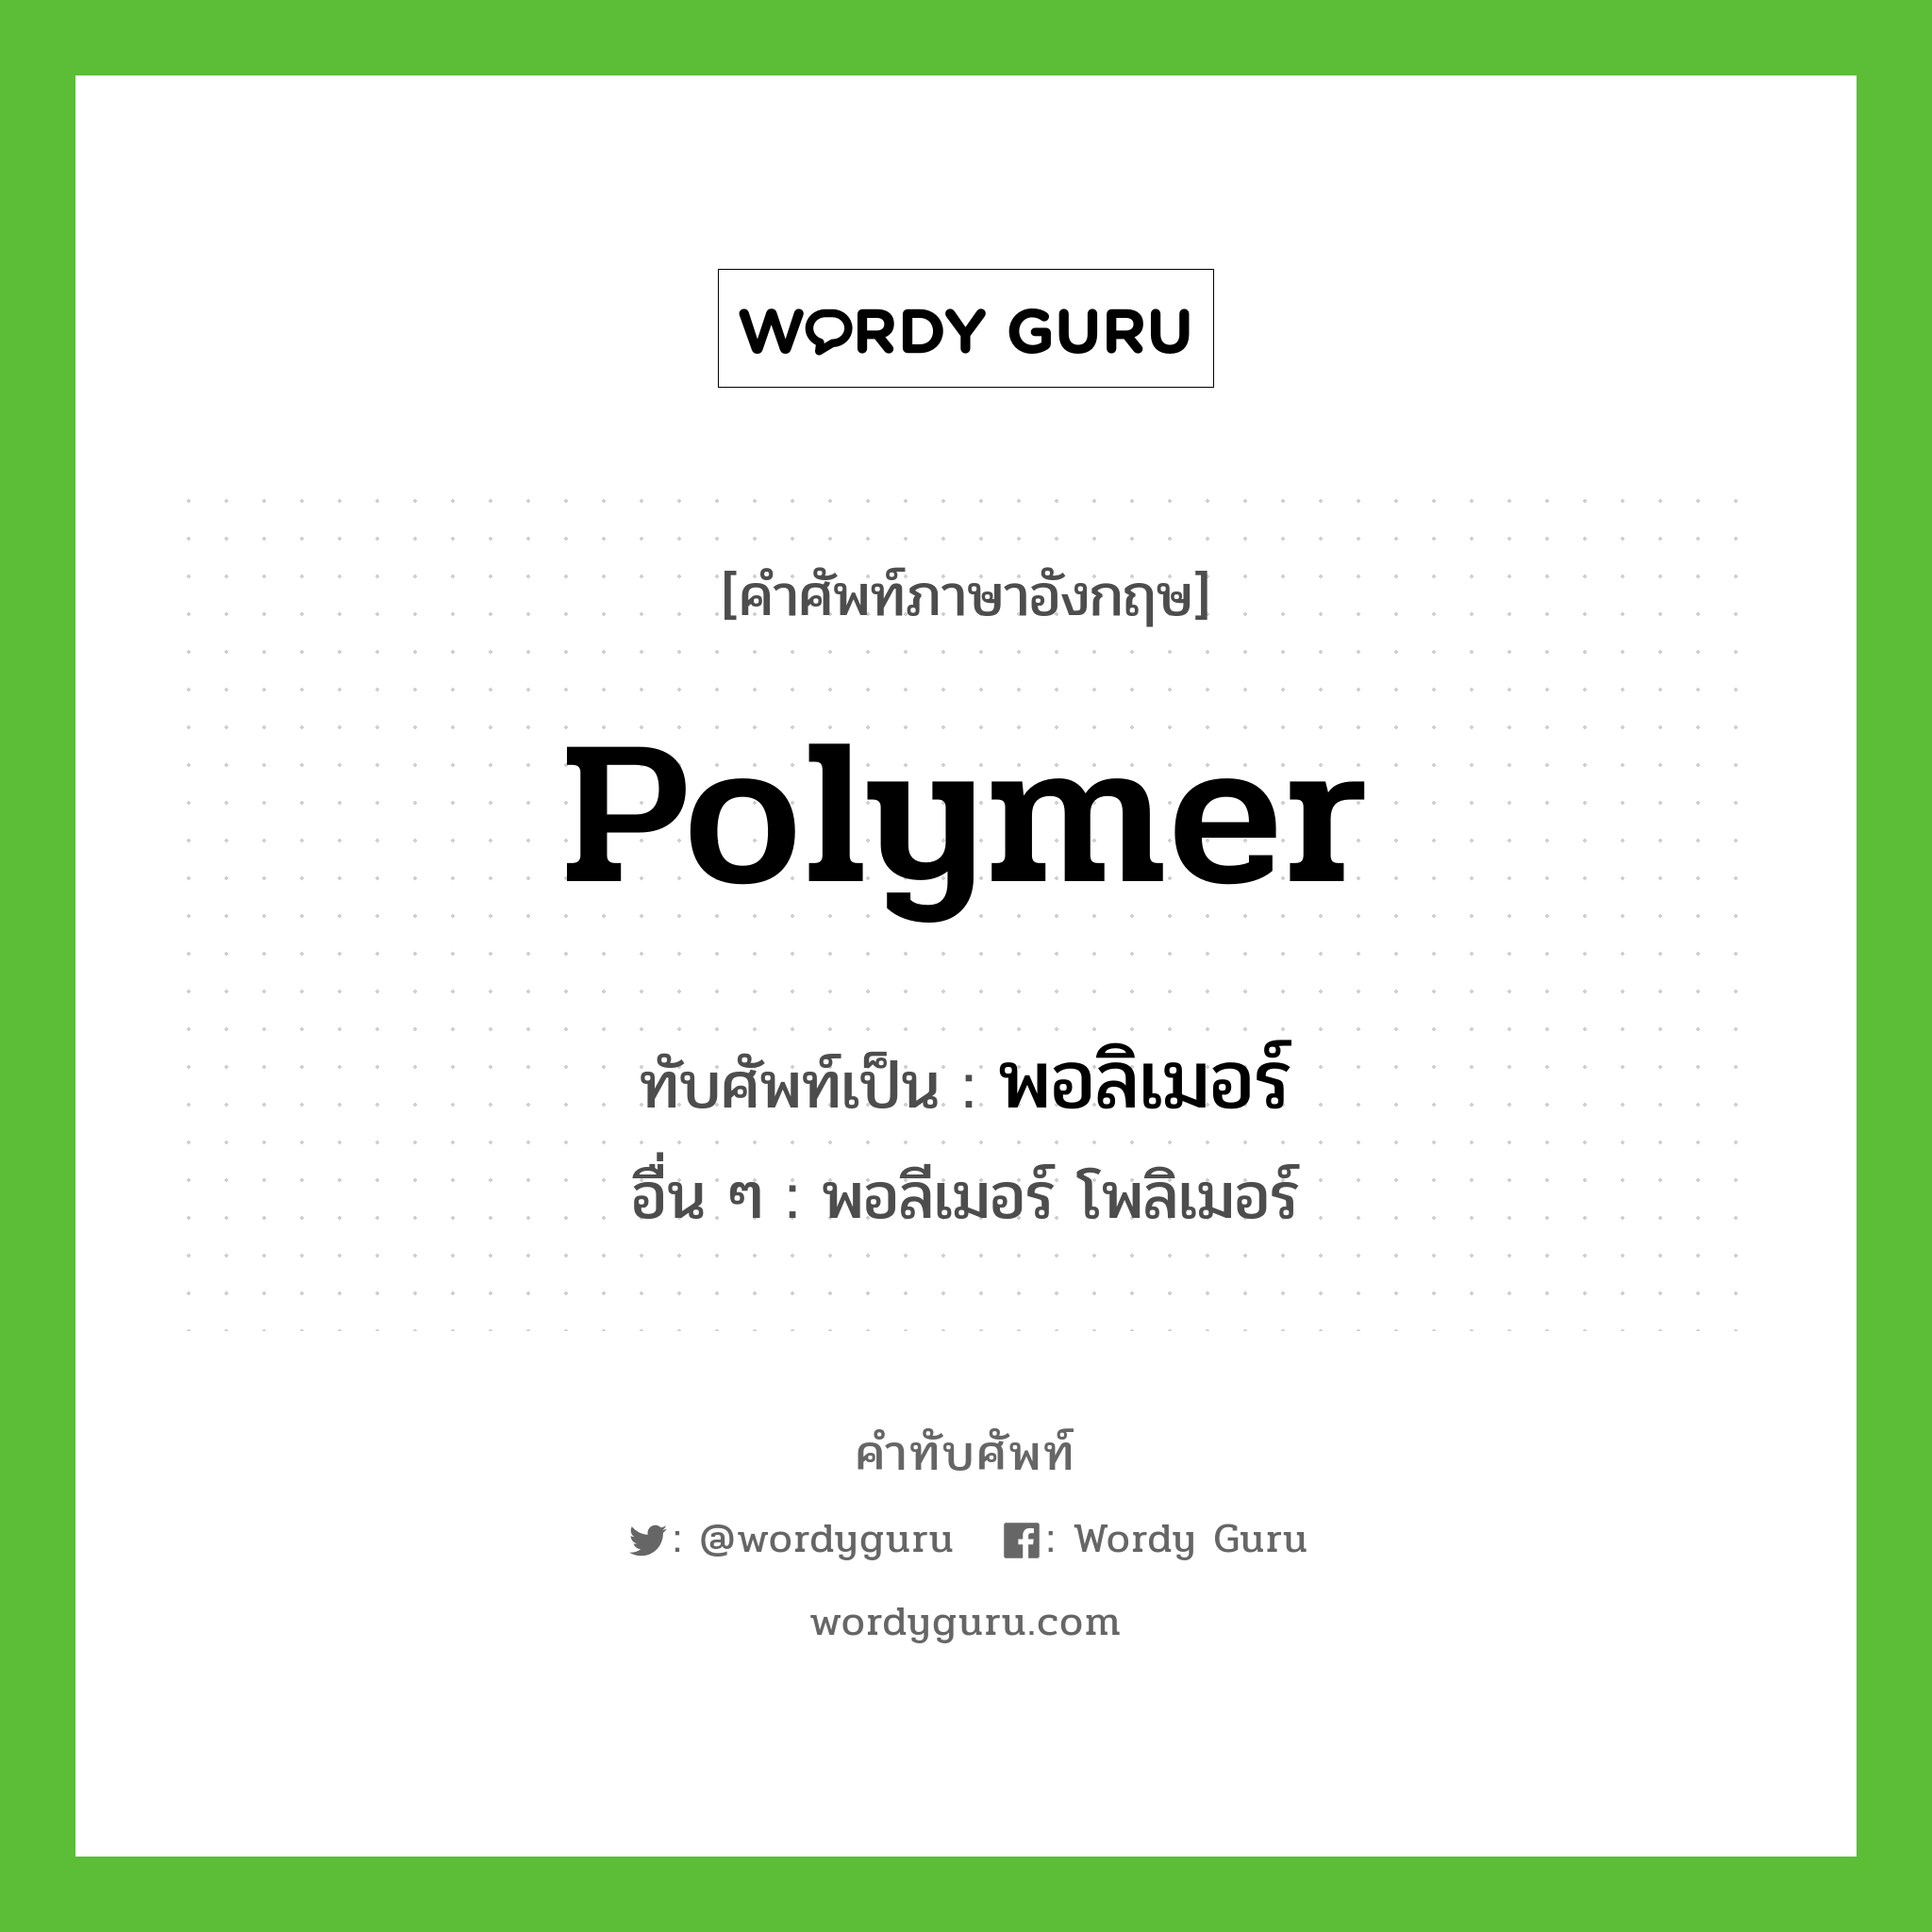 พอลิเมอร์ เขียนอย่างไร?, คำศัพท์ภาษาอังกฤษ พอลิเมอร์ ทับศัพท์เป็น polymer อื่น ๆ พอลีเมอร์ โพลิเมอร์